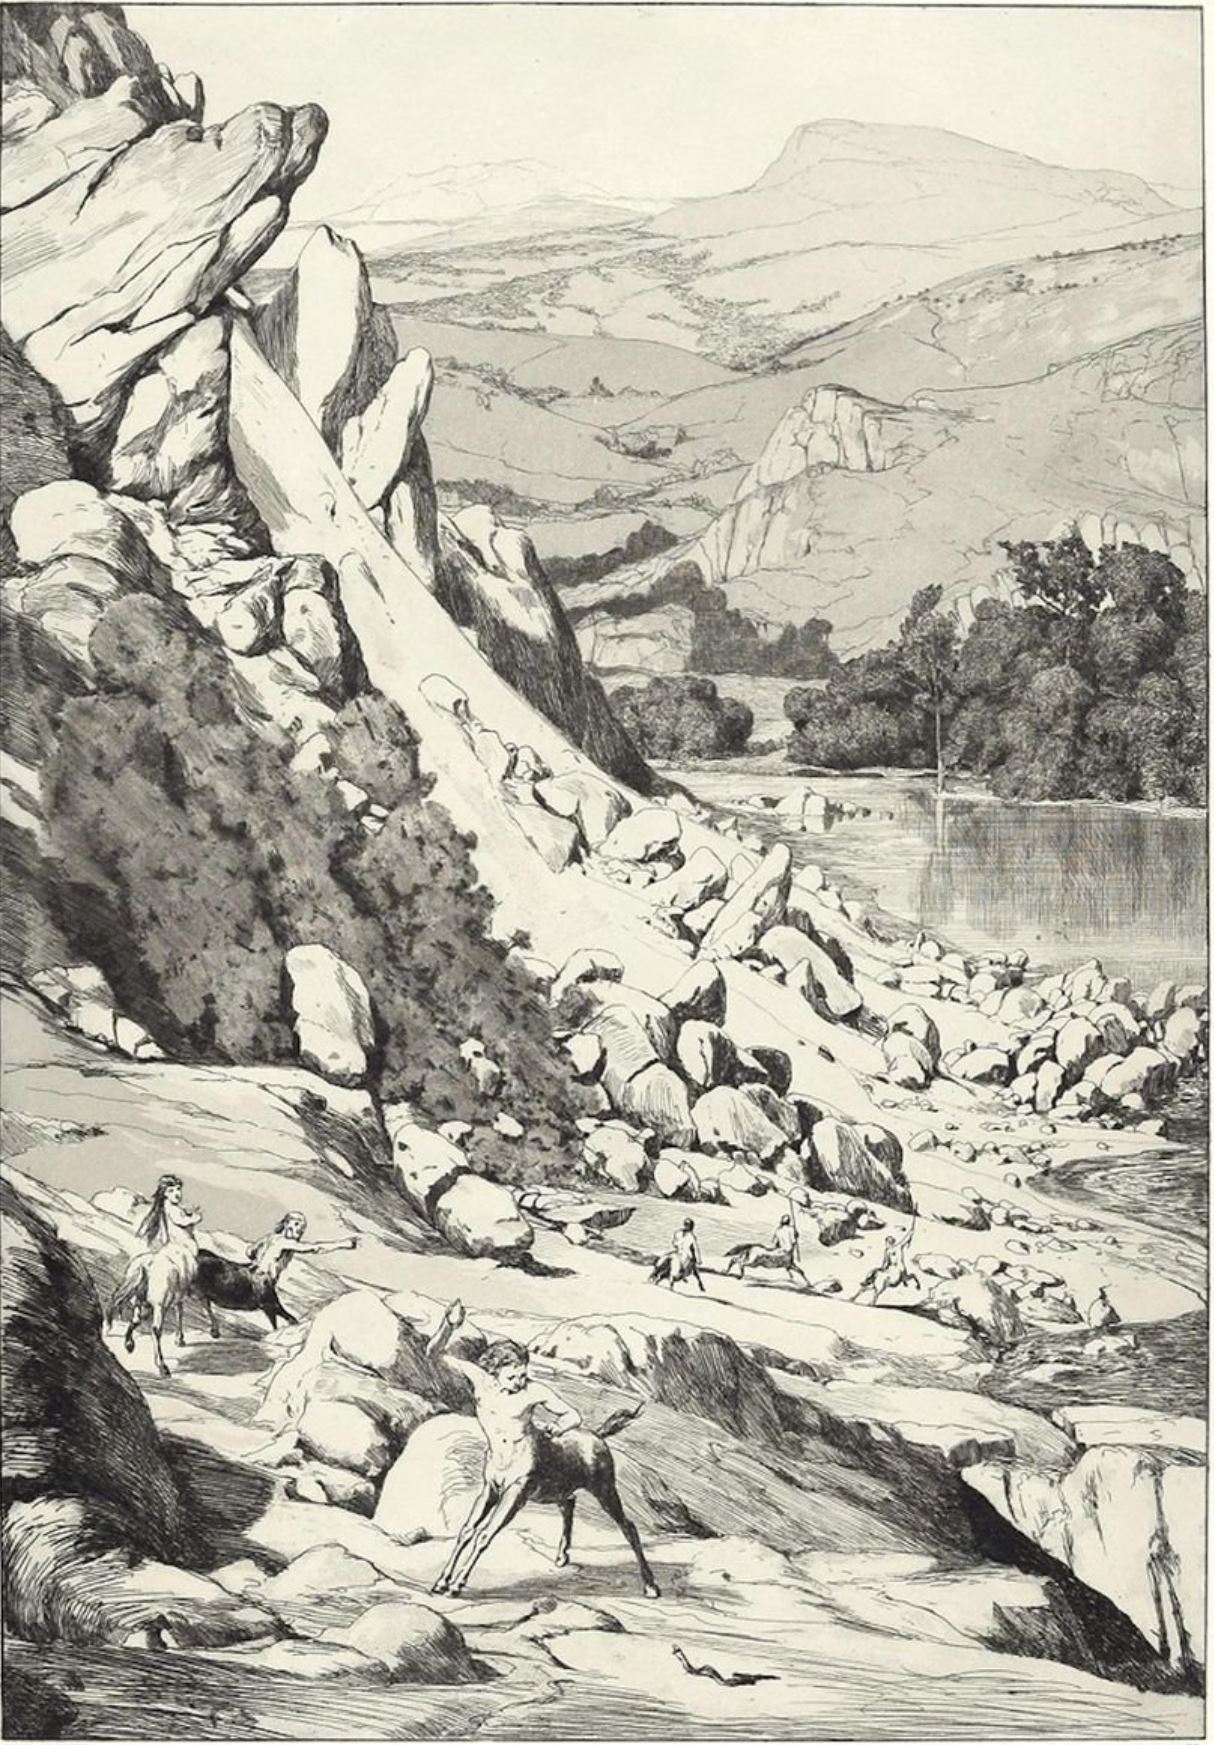 Landslide (Bergstruz) by Max Klinger (1881) 